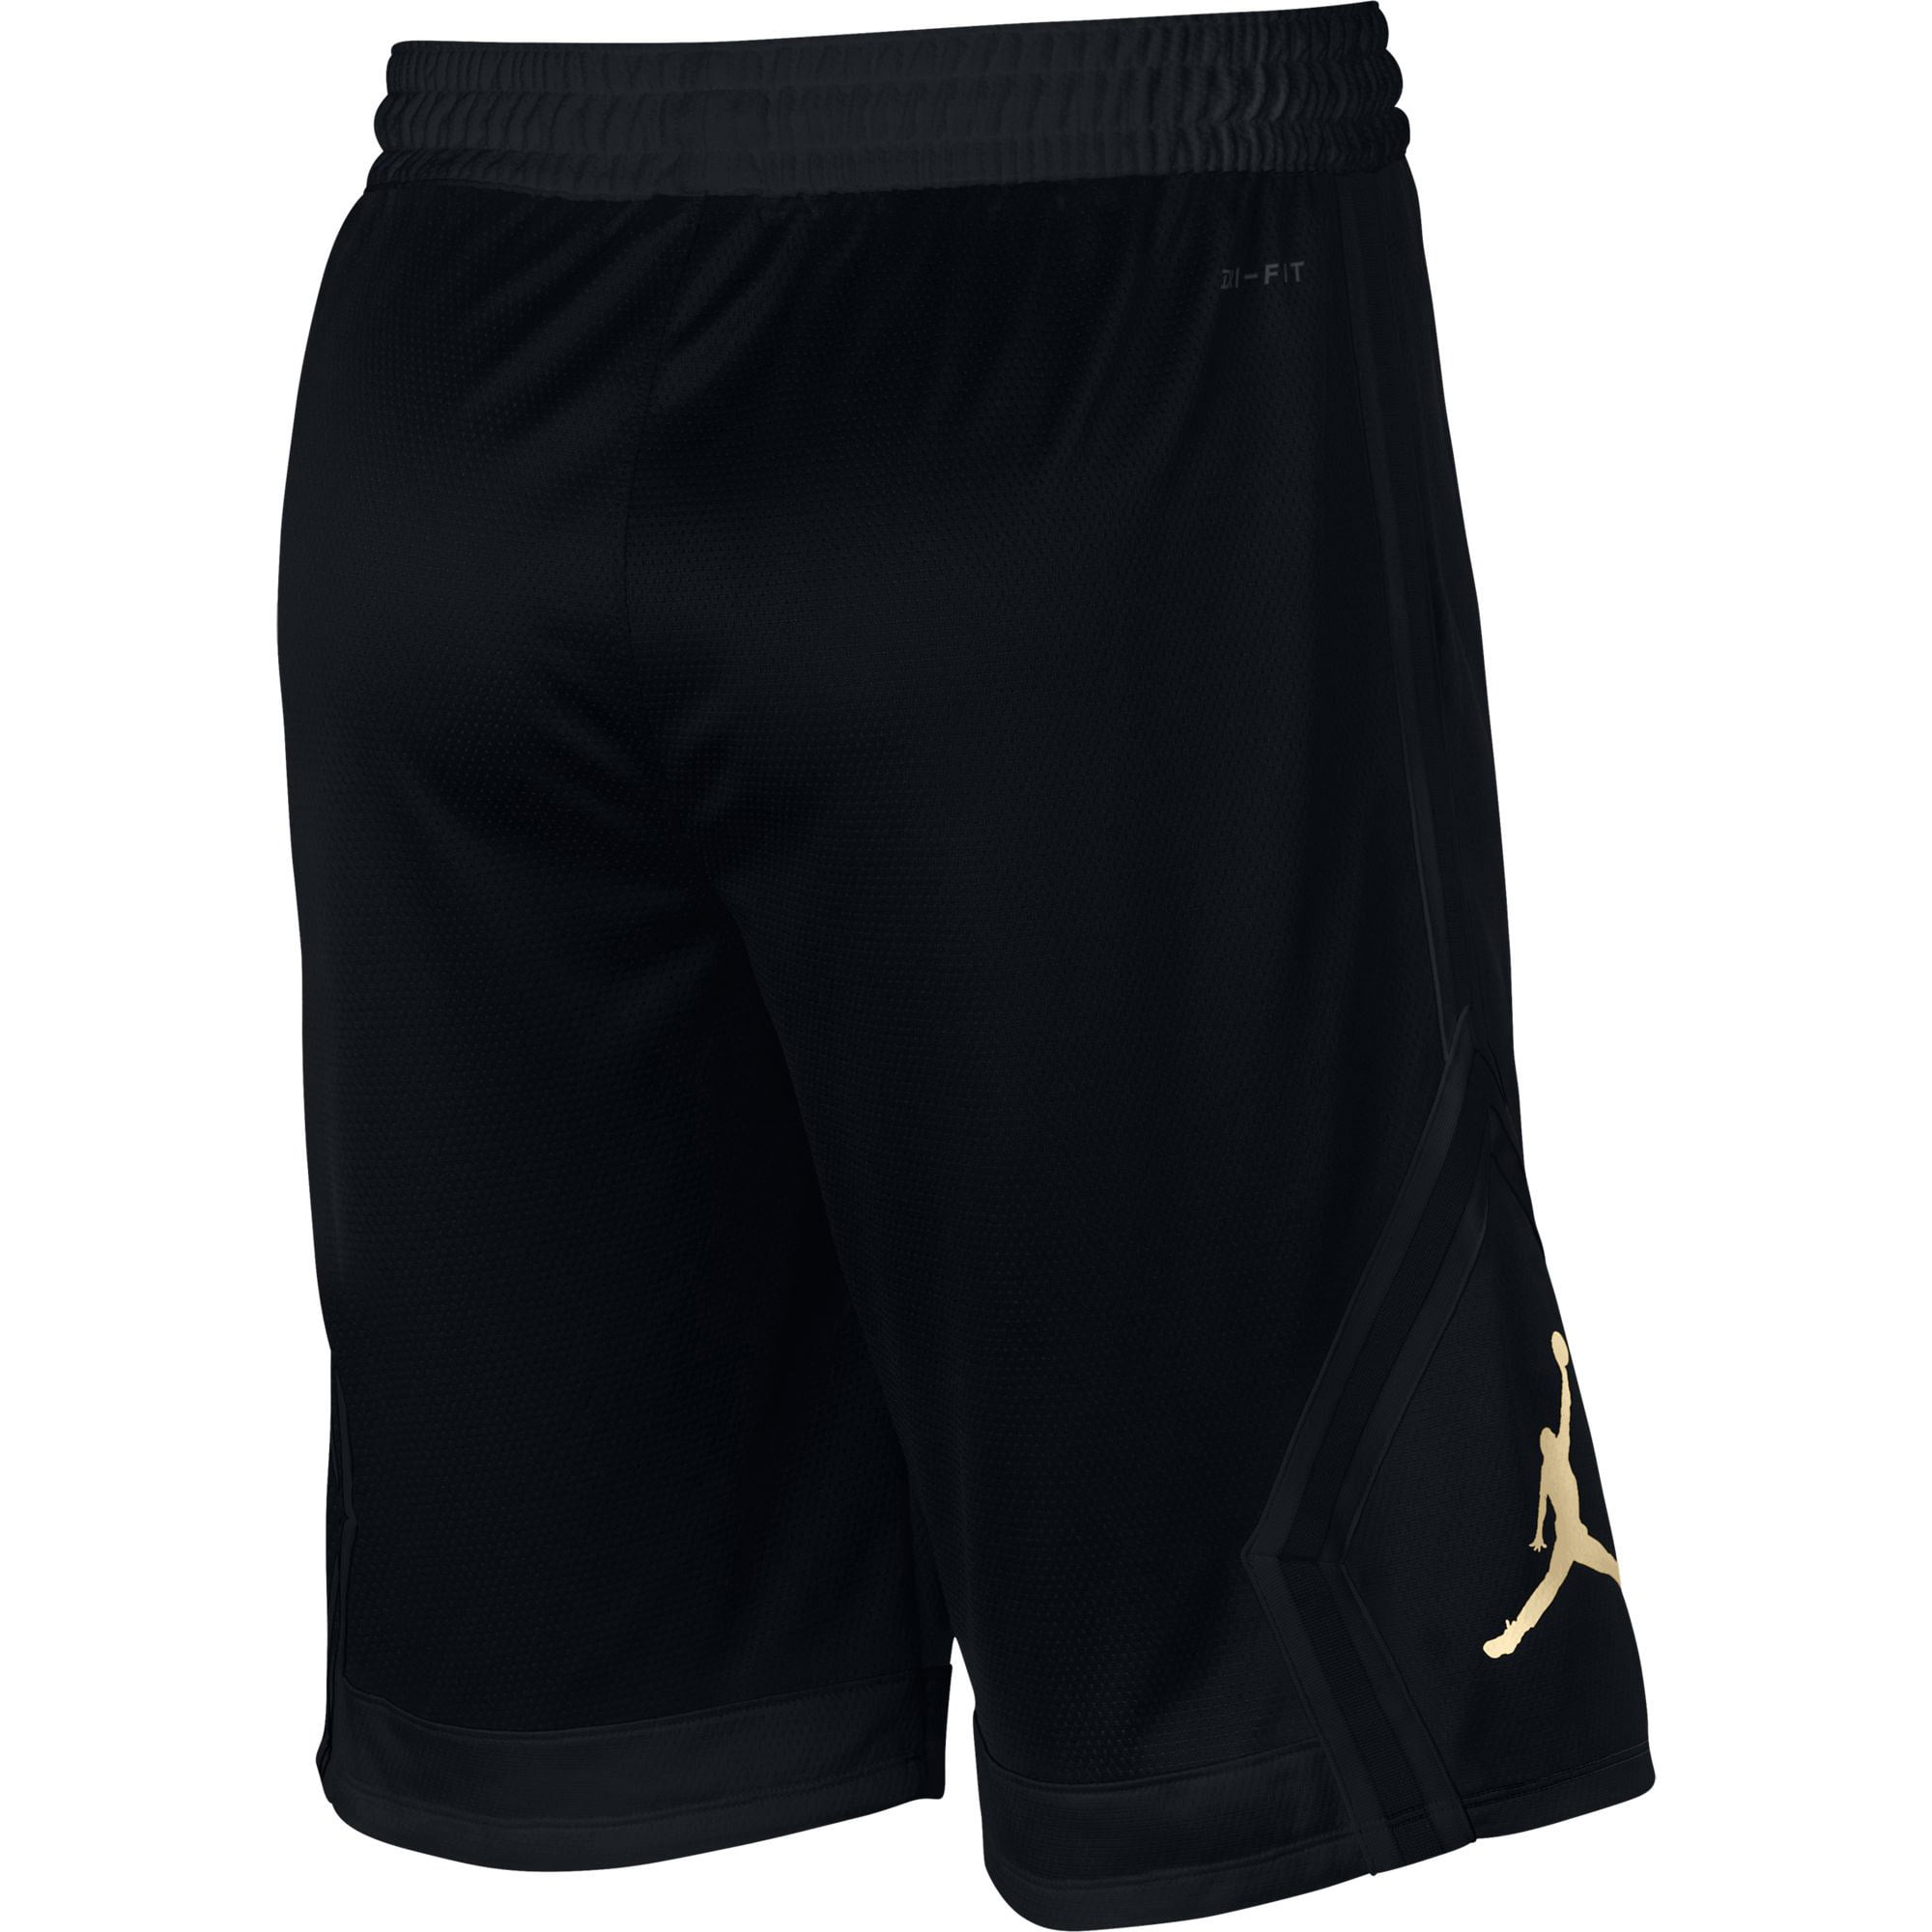 black and gold jordan basketball shorts